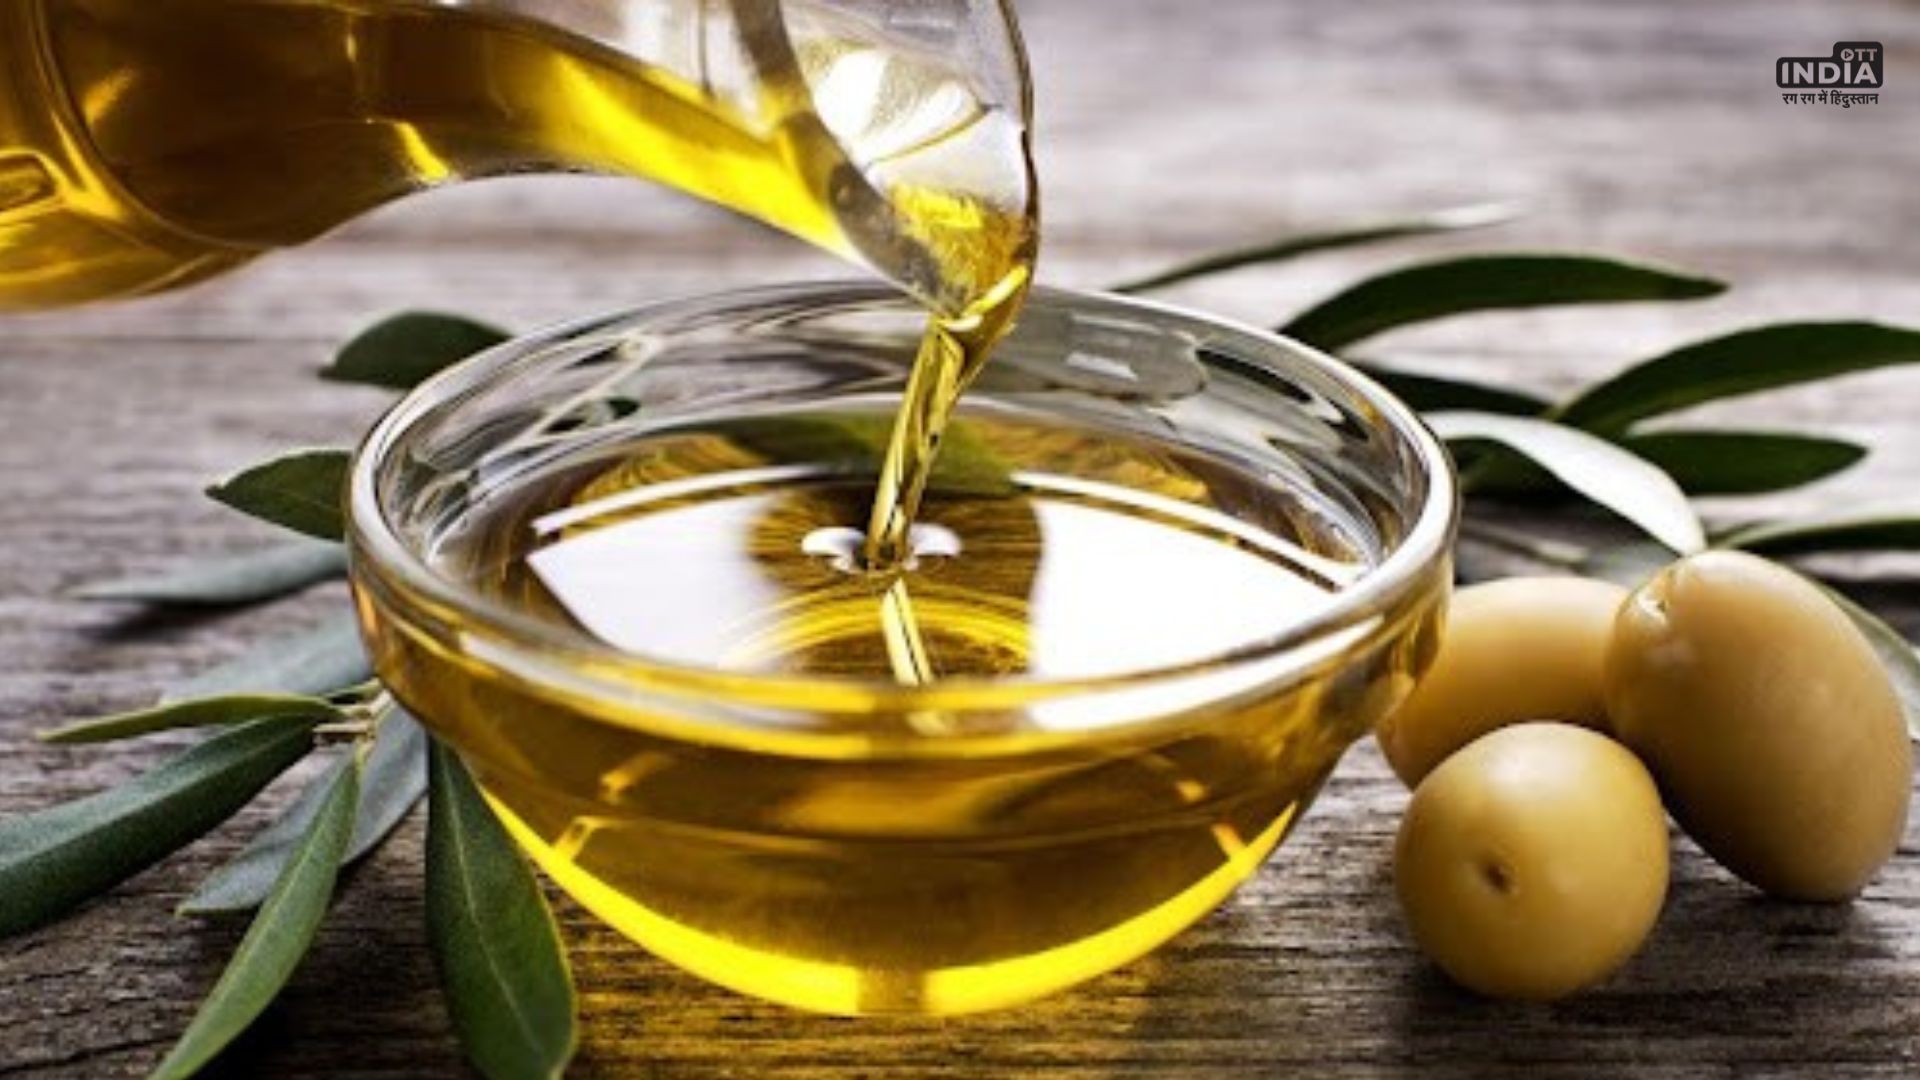 Olive Oil benefits: सेहत के लिए बेहद लाभकारी है जैतून का तेल, बस उपयोग में बरतनी होगी ये सावधानियां..